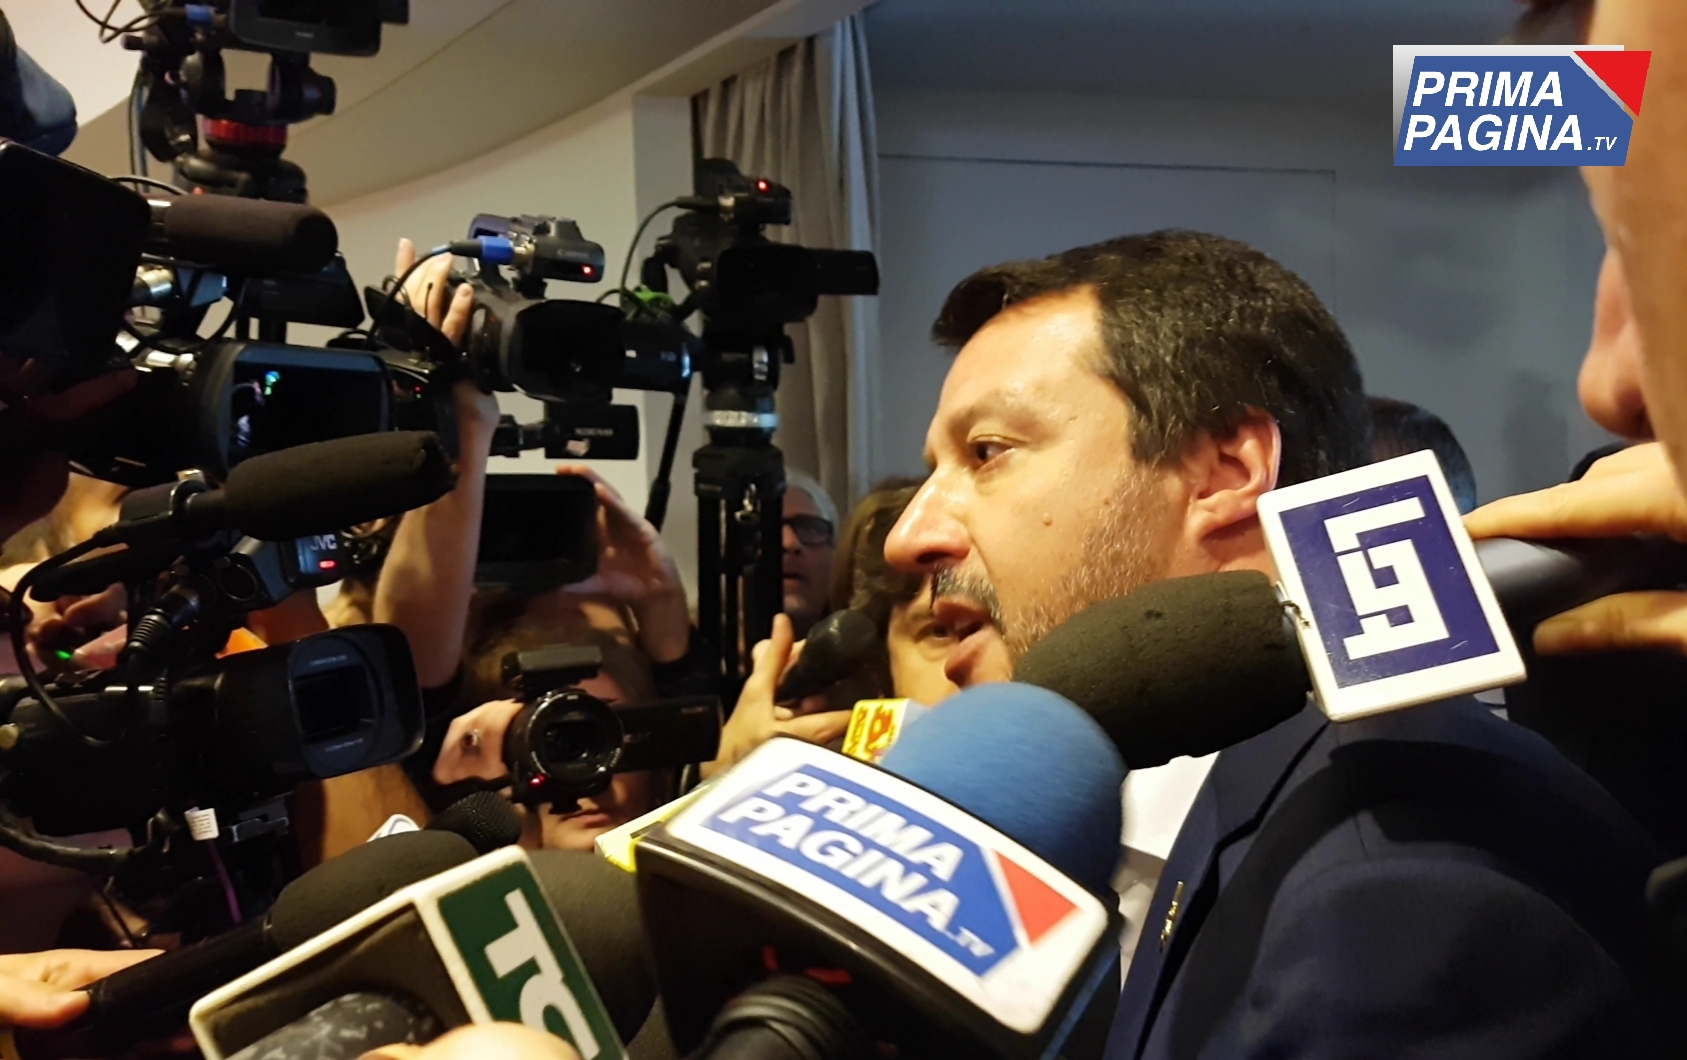 GOVERNO: CRISI APERTA. Per Salvini l'unica strada è quella delle urne